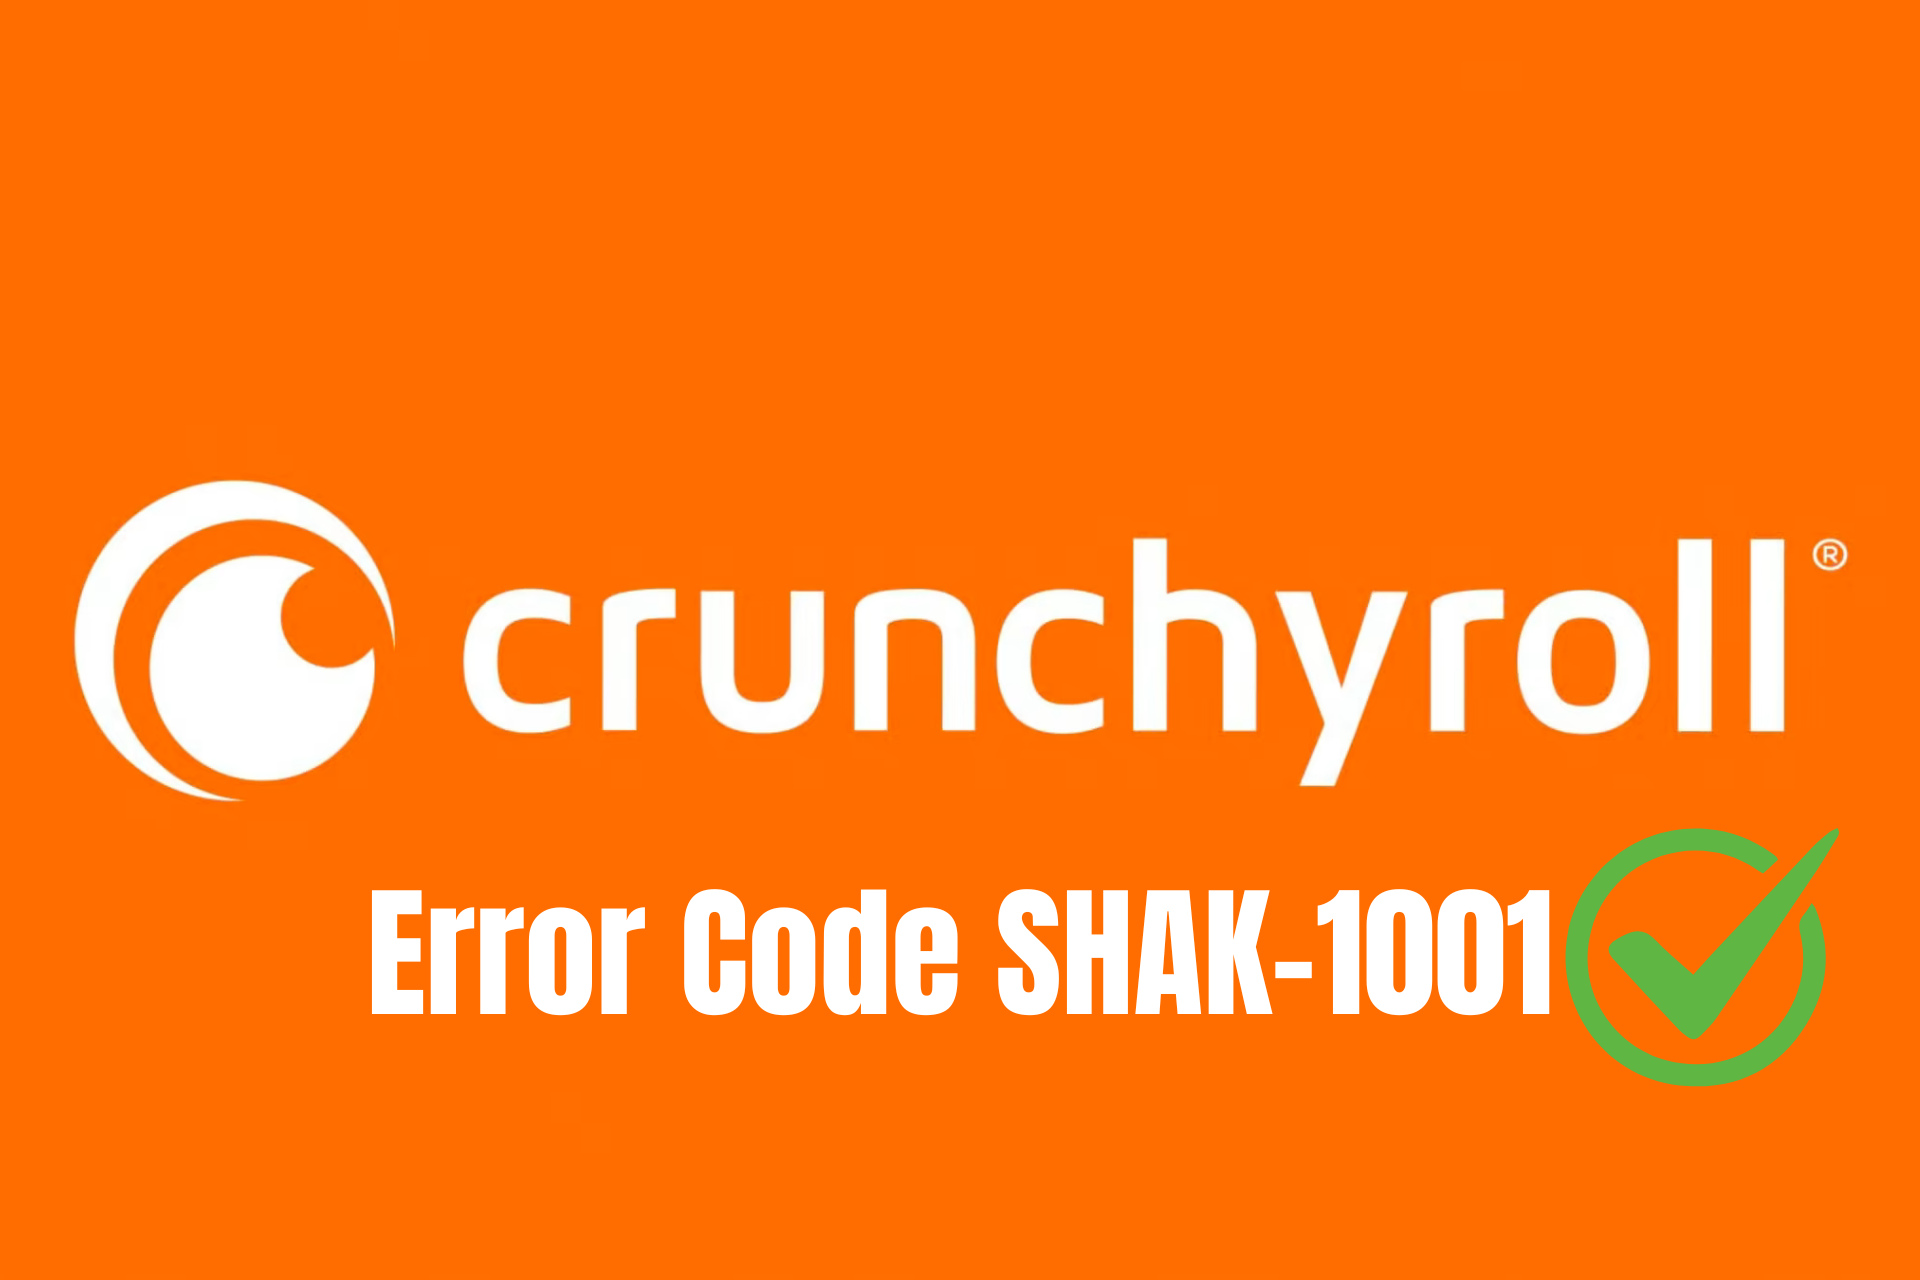 How to fix Crunchyroll Error Code SHAK-1001